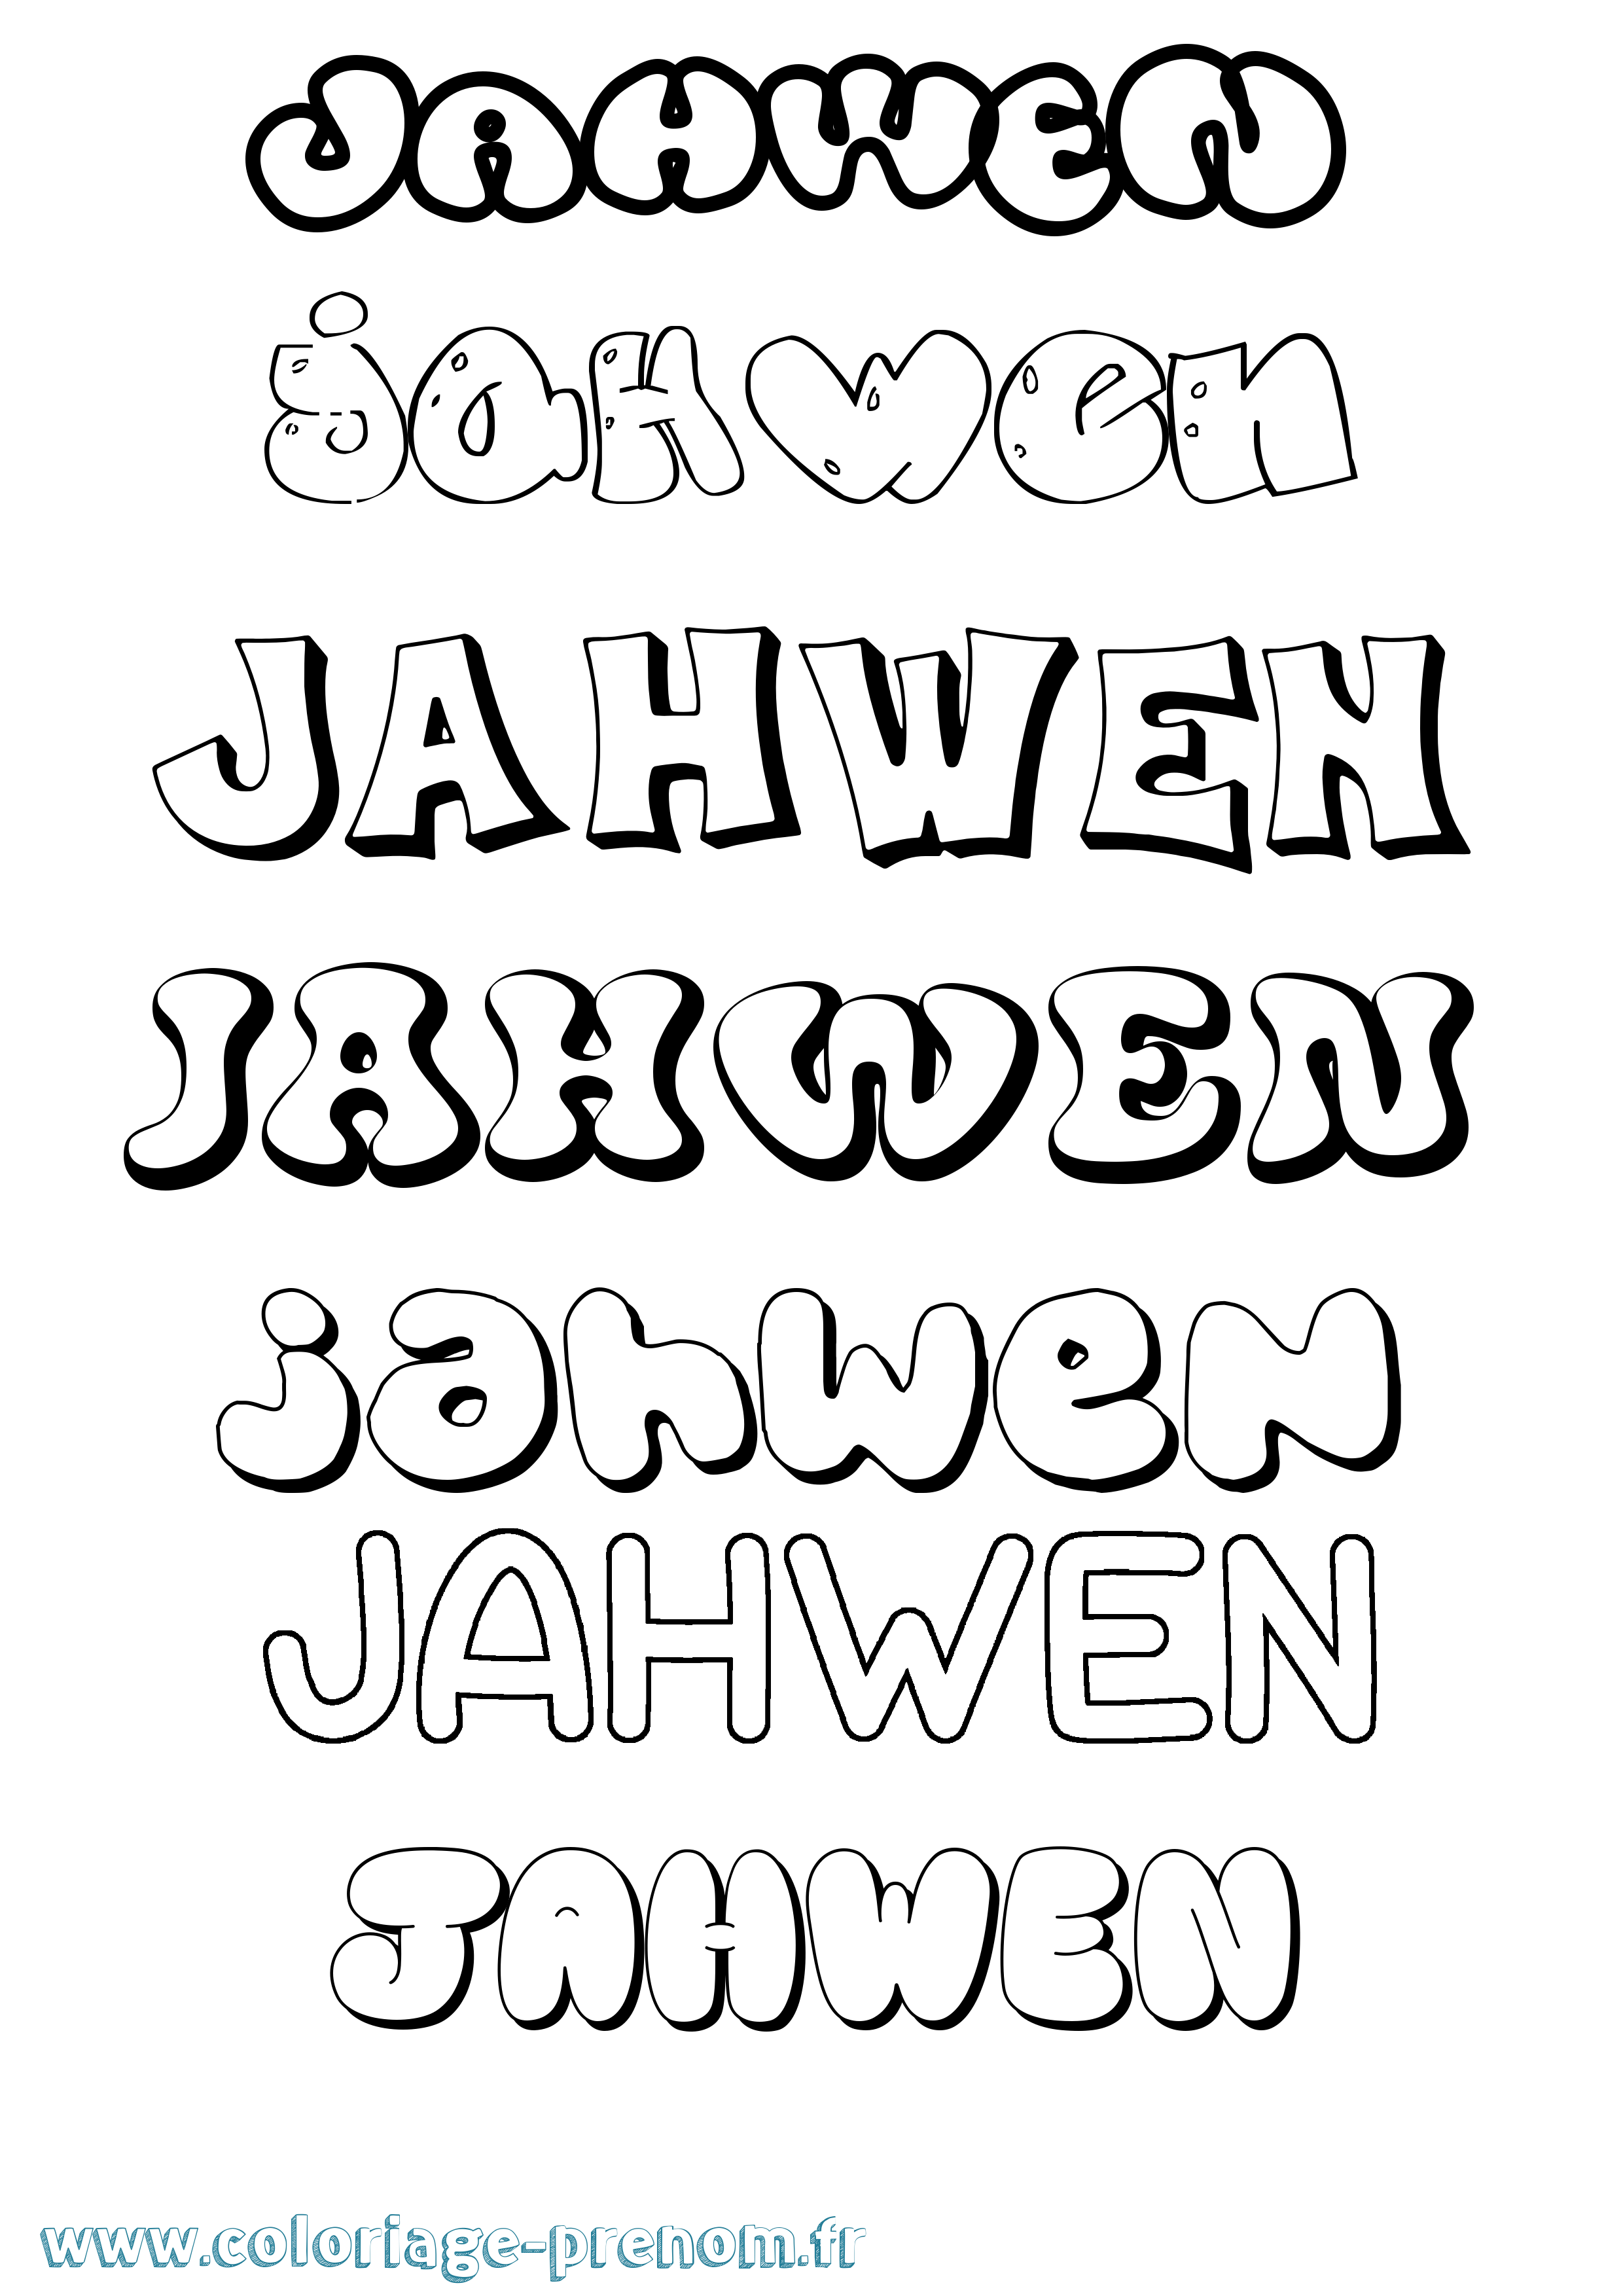 Coloriage prénom Jahwen Bubble